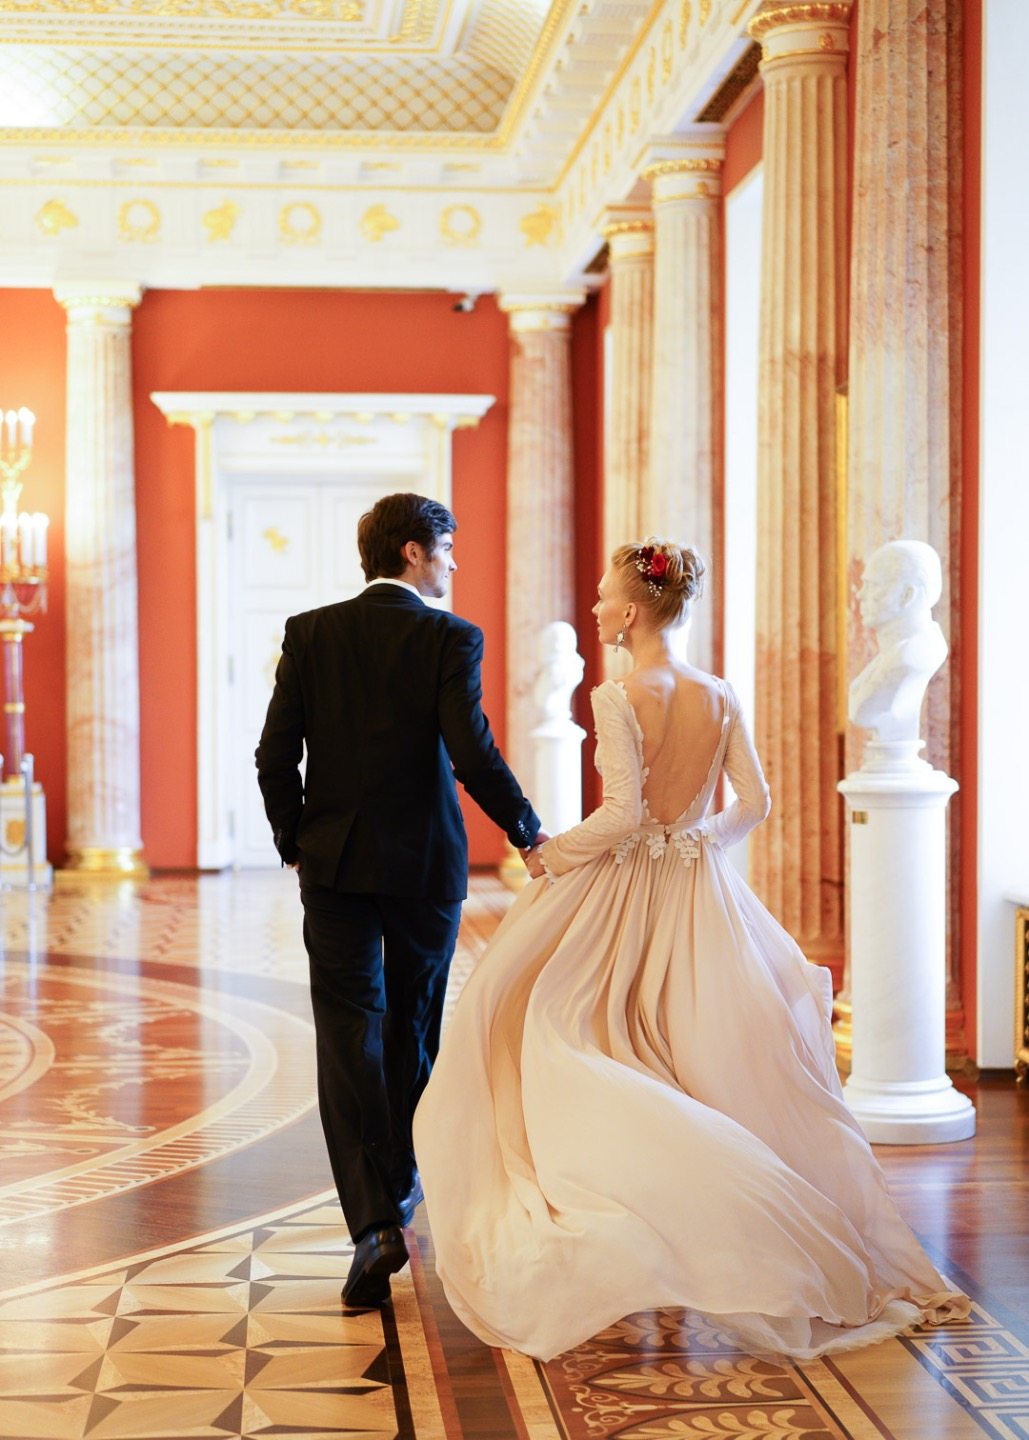 Russian wedding inspiration: стилизованная фотосессия